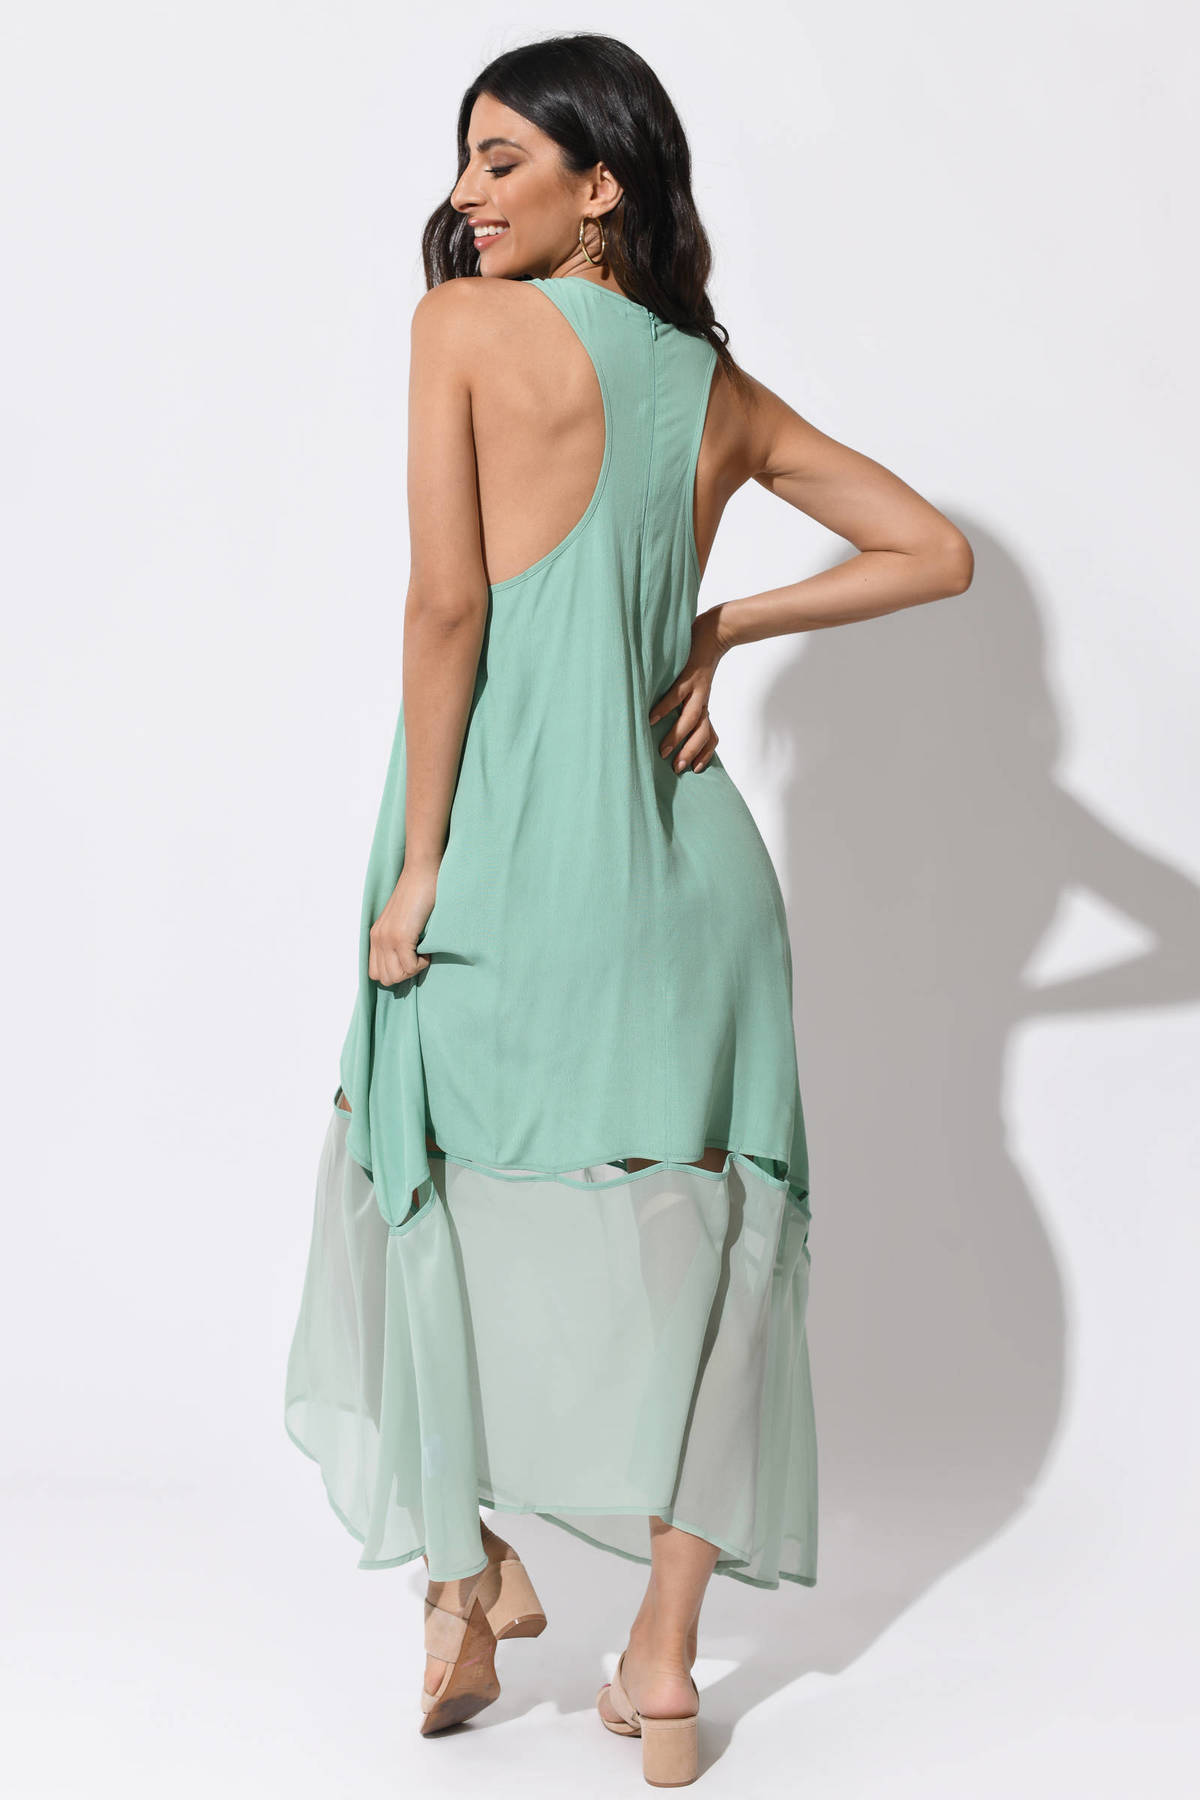 Sexy Pistachio Dress - green Dress - Cut Out Dress - Seafoam Dress